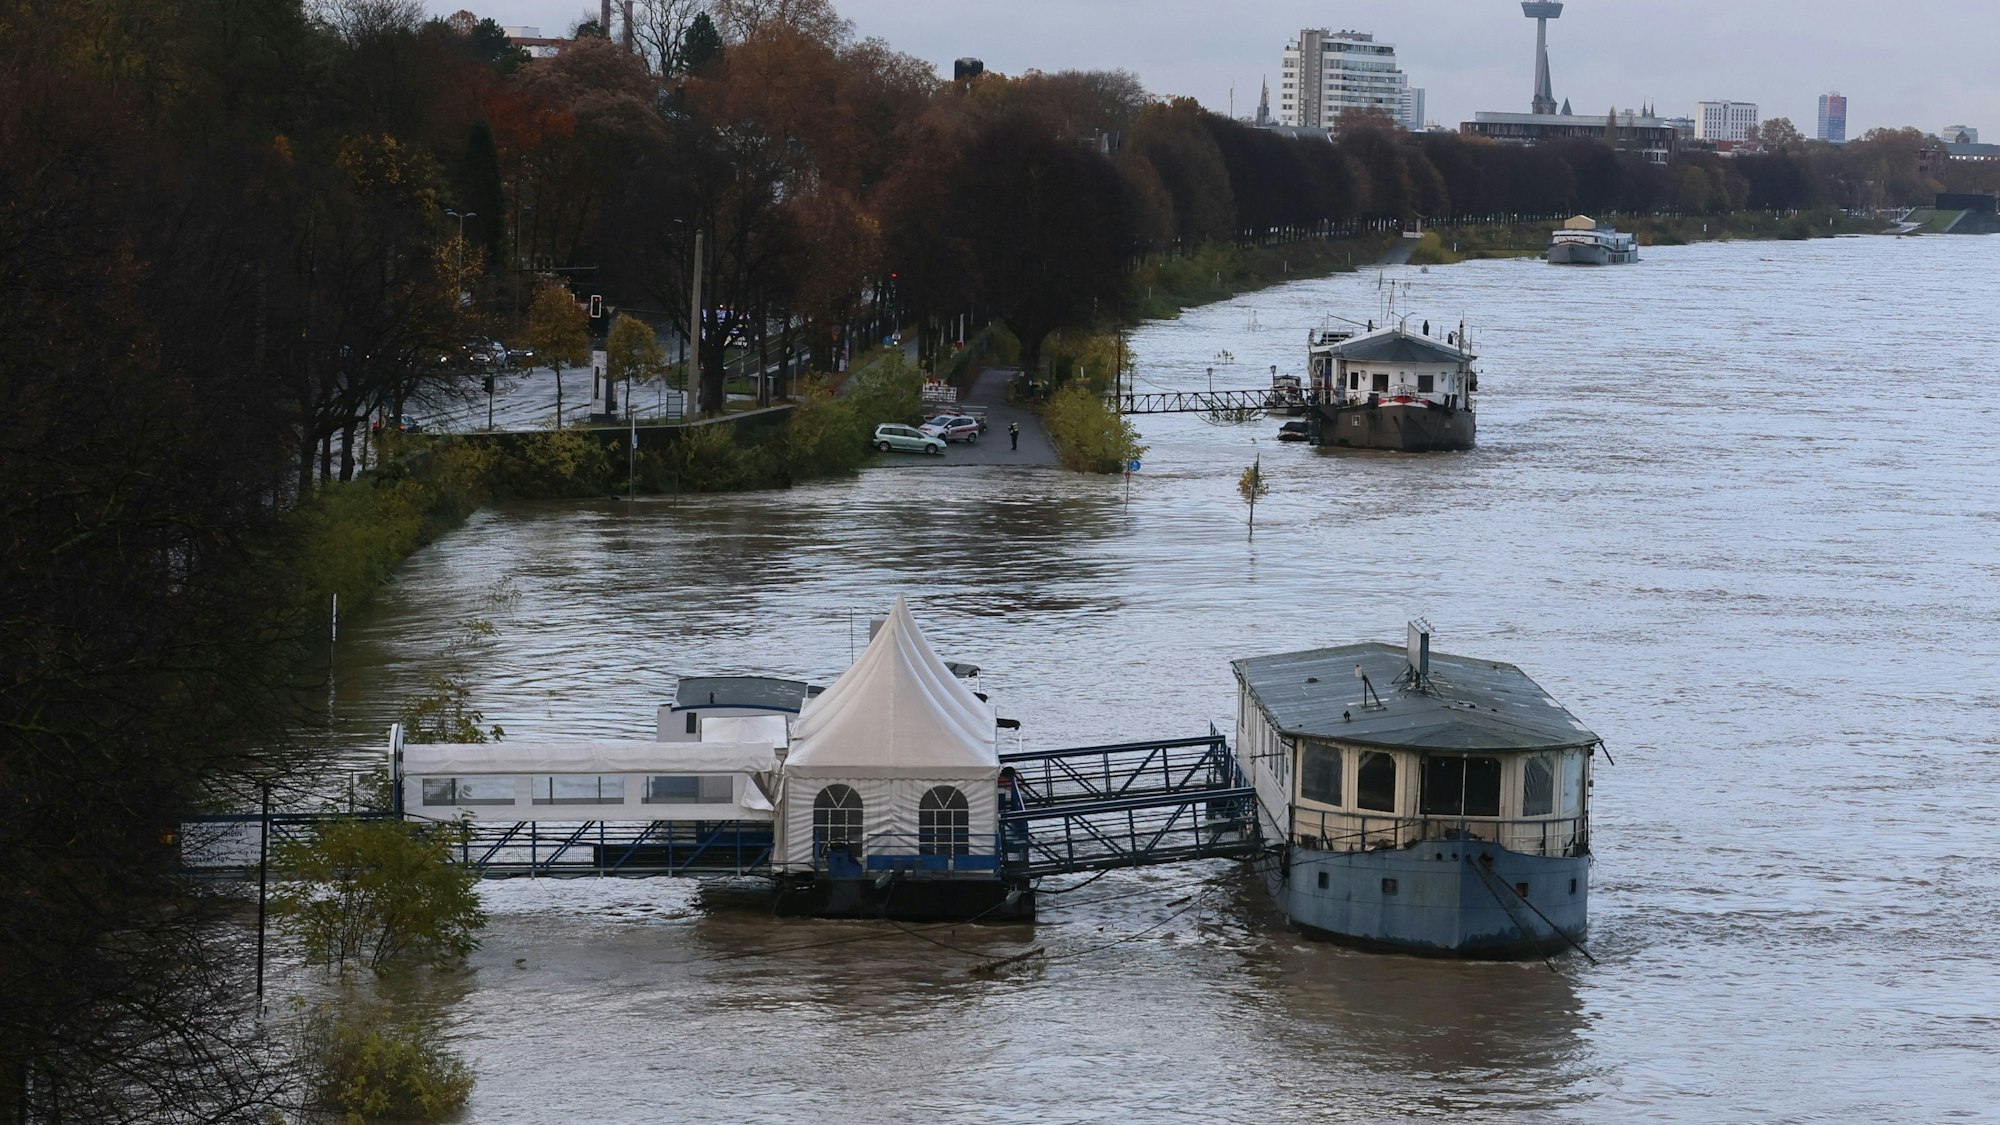 Hochwasser am Rhein in Köln-Rodenkirchen